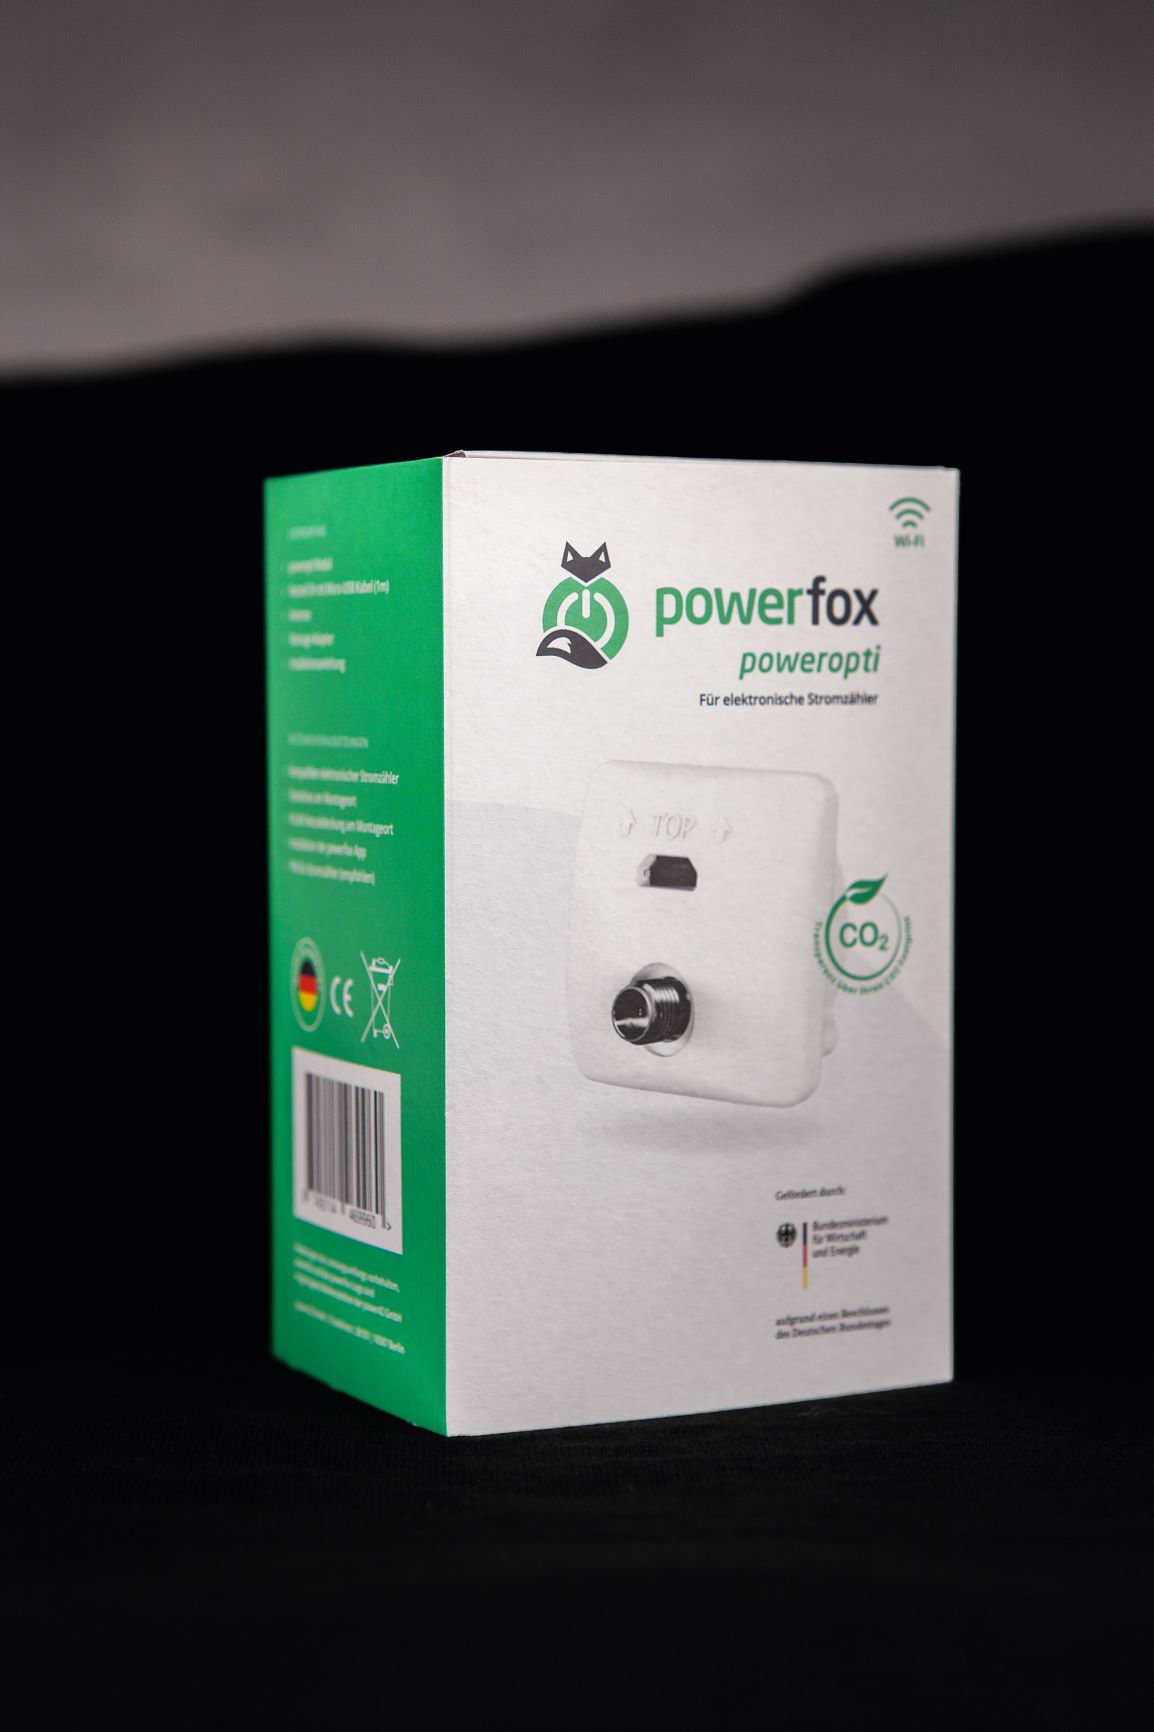 Powerfox poweropti - Ihr Energieverbrauch auf einen Blick, Geeignet für moderne Messeinrichtungen (mME)